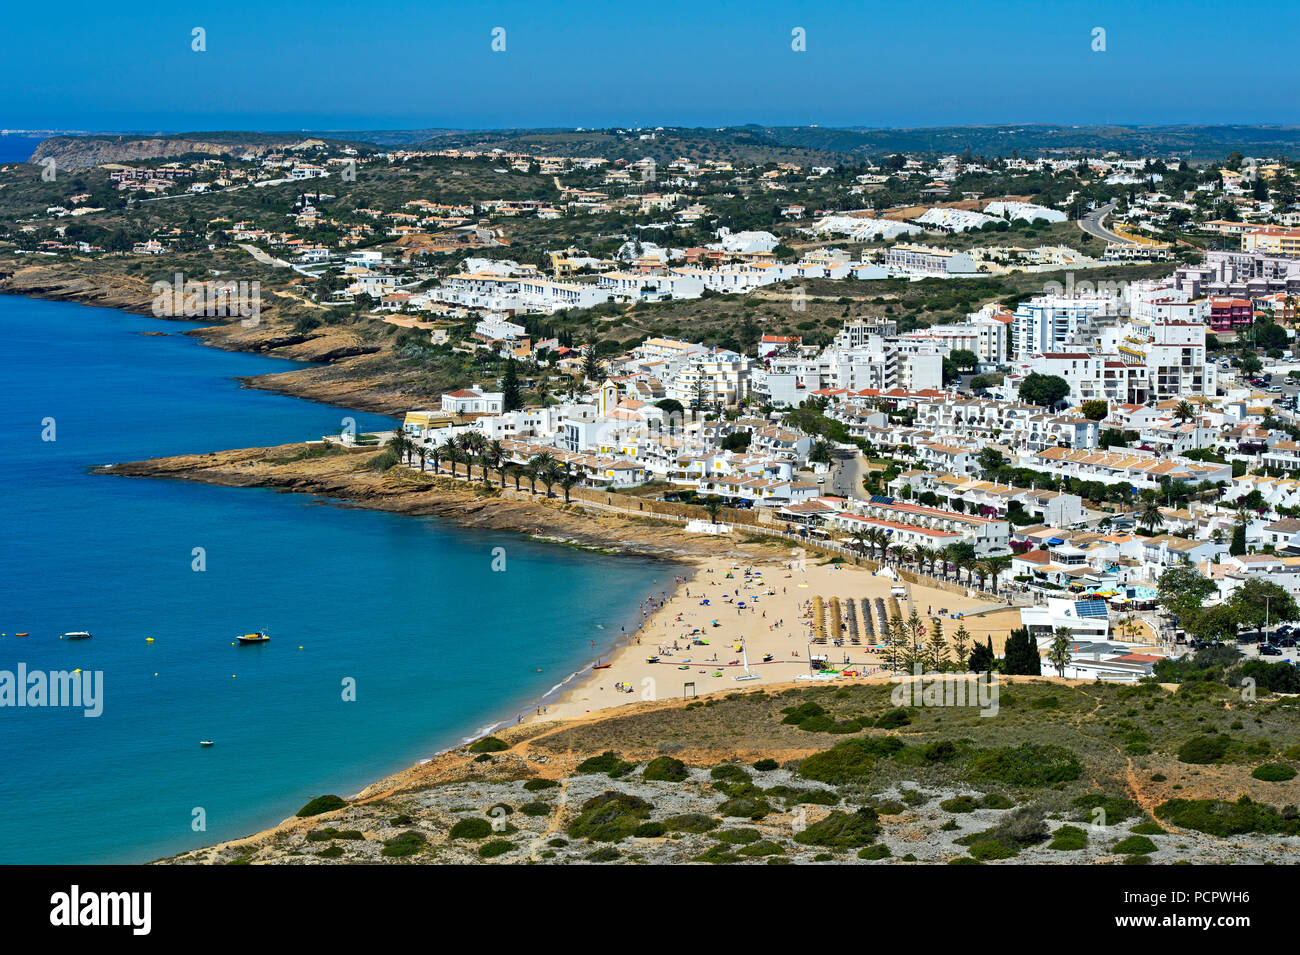 View at Praia da Luz at the Algarve coast, Portugal Stock Photo